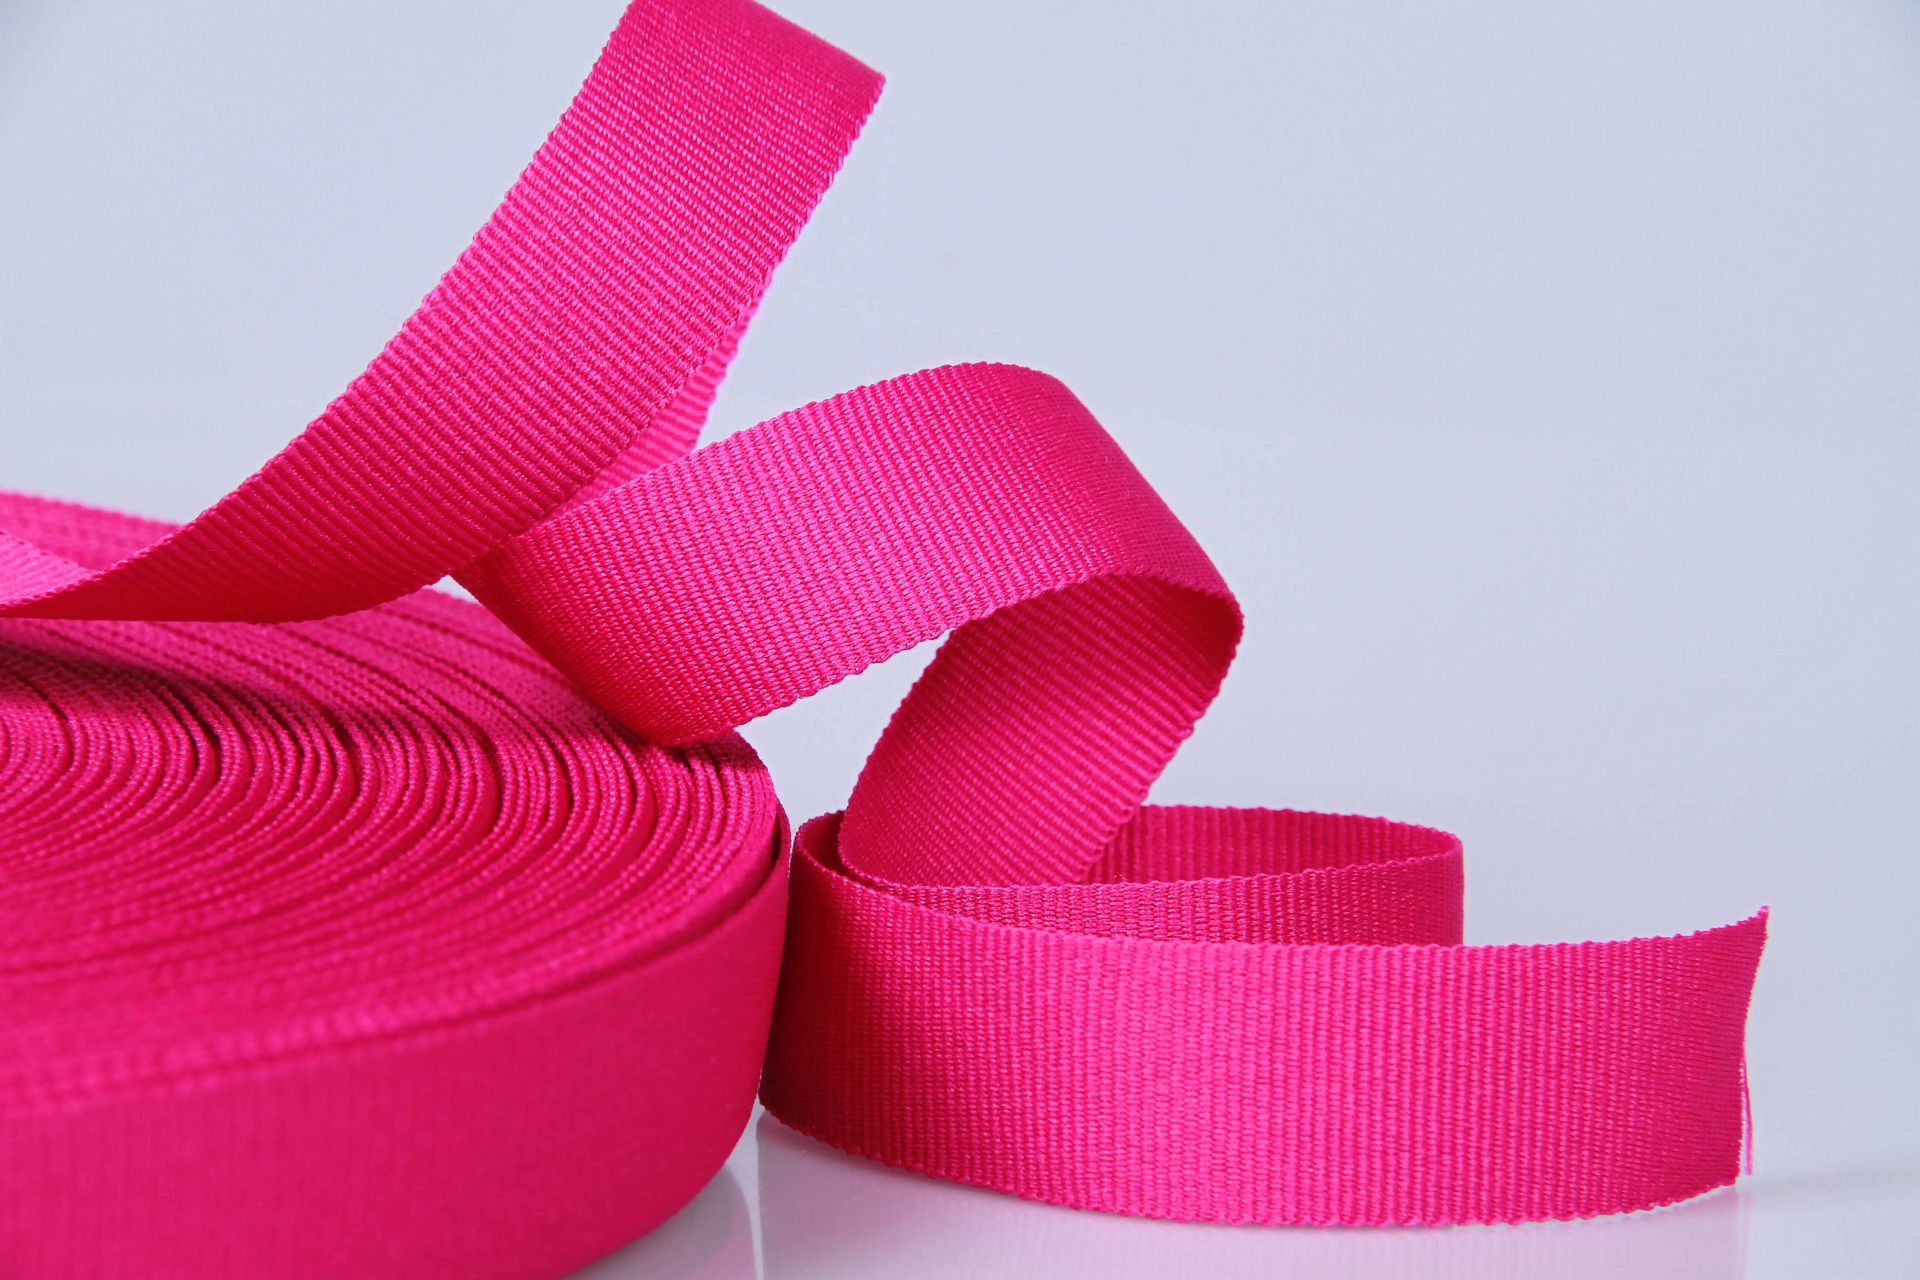 PES-Ripsband  -  20 mm breit  -  50 mtr. Rolle  -  pink  -  soft/weich